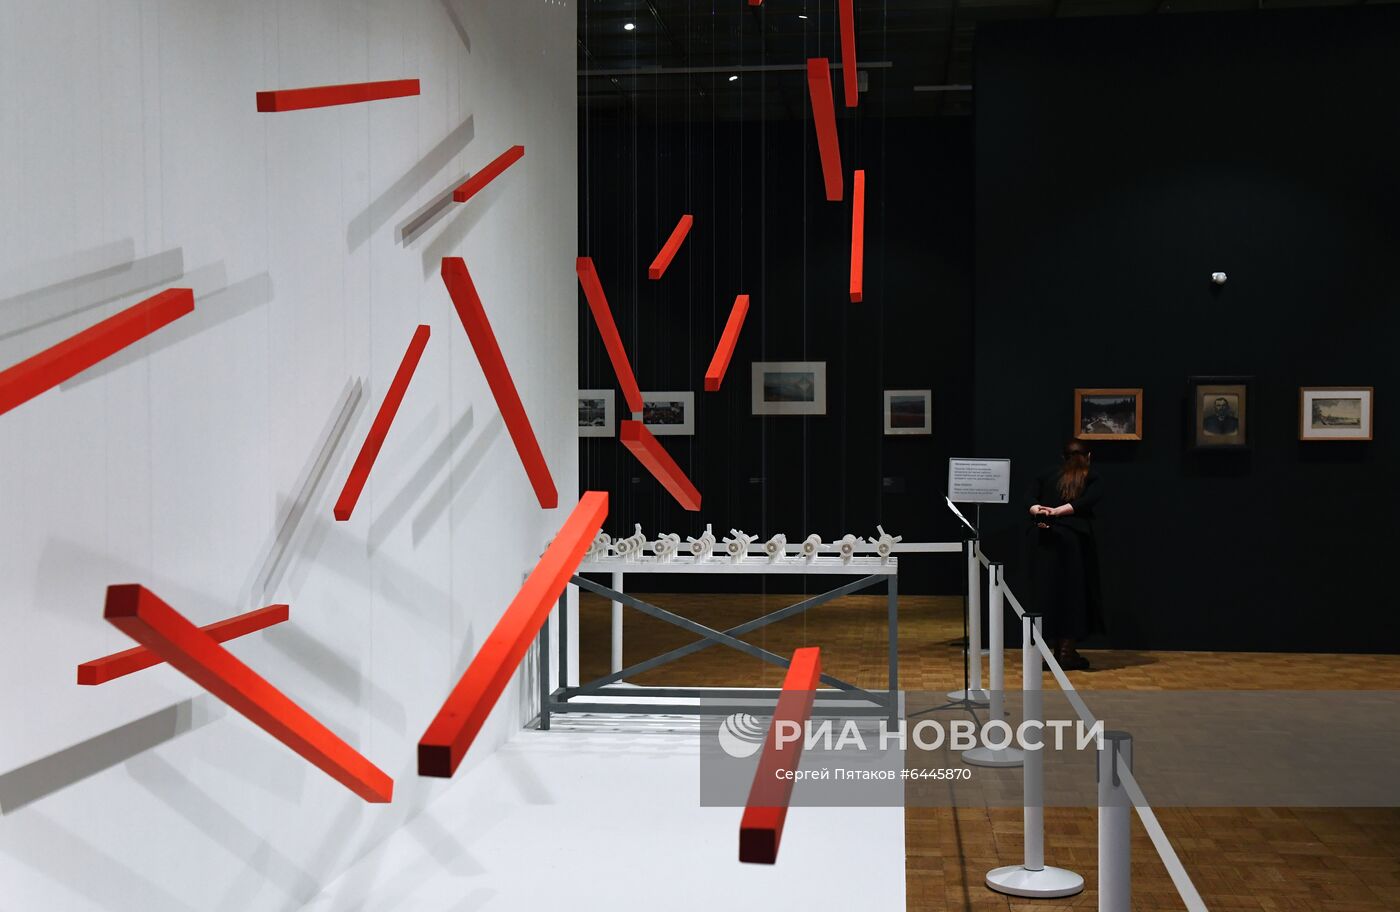 Выставка "Лаборатория будущего. Кинетическое искусство в России" в Третьяковской галерее